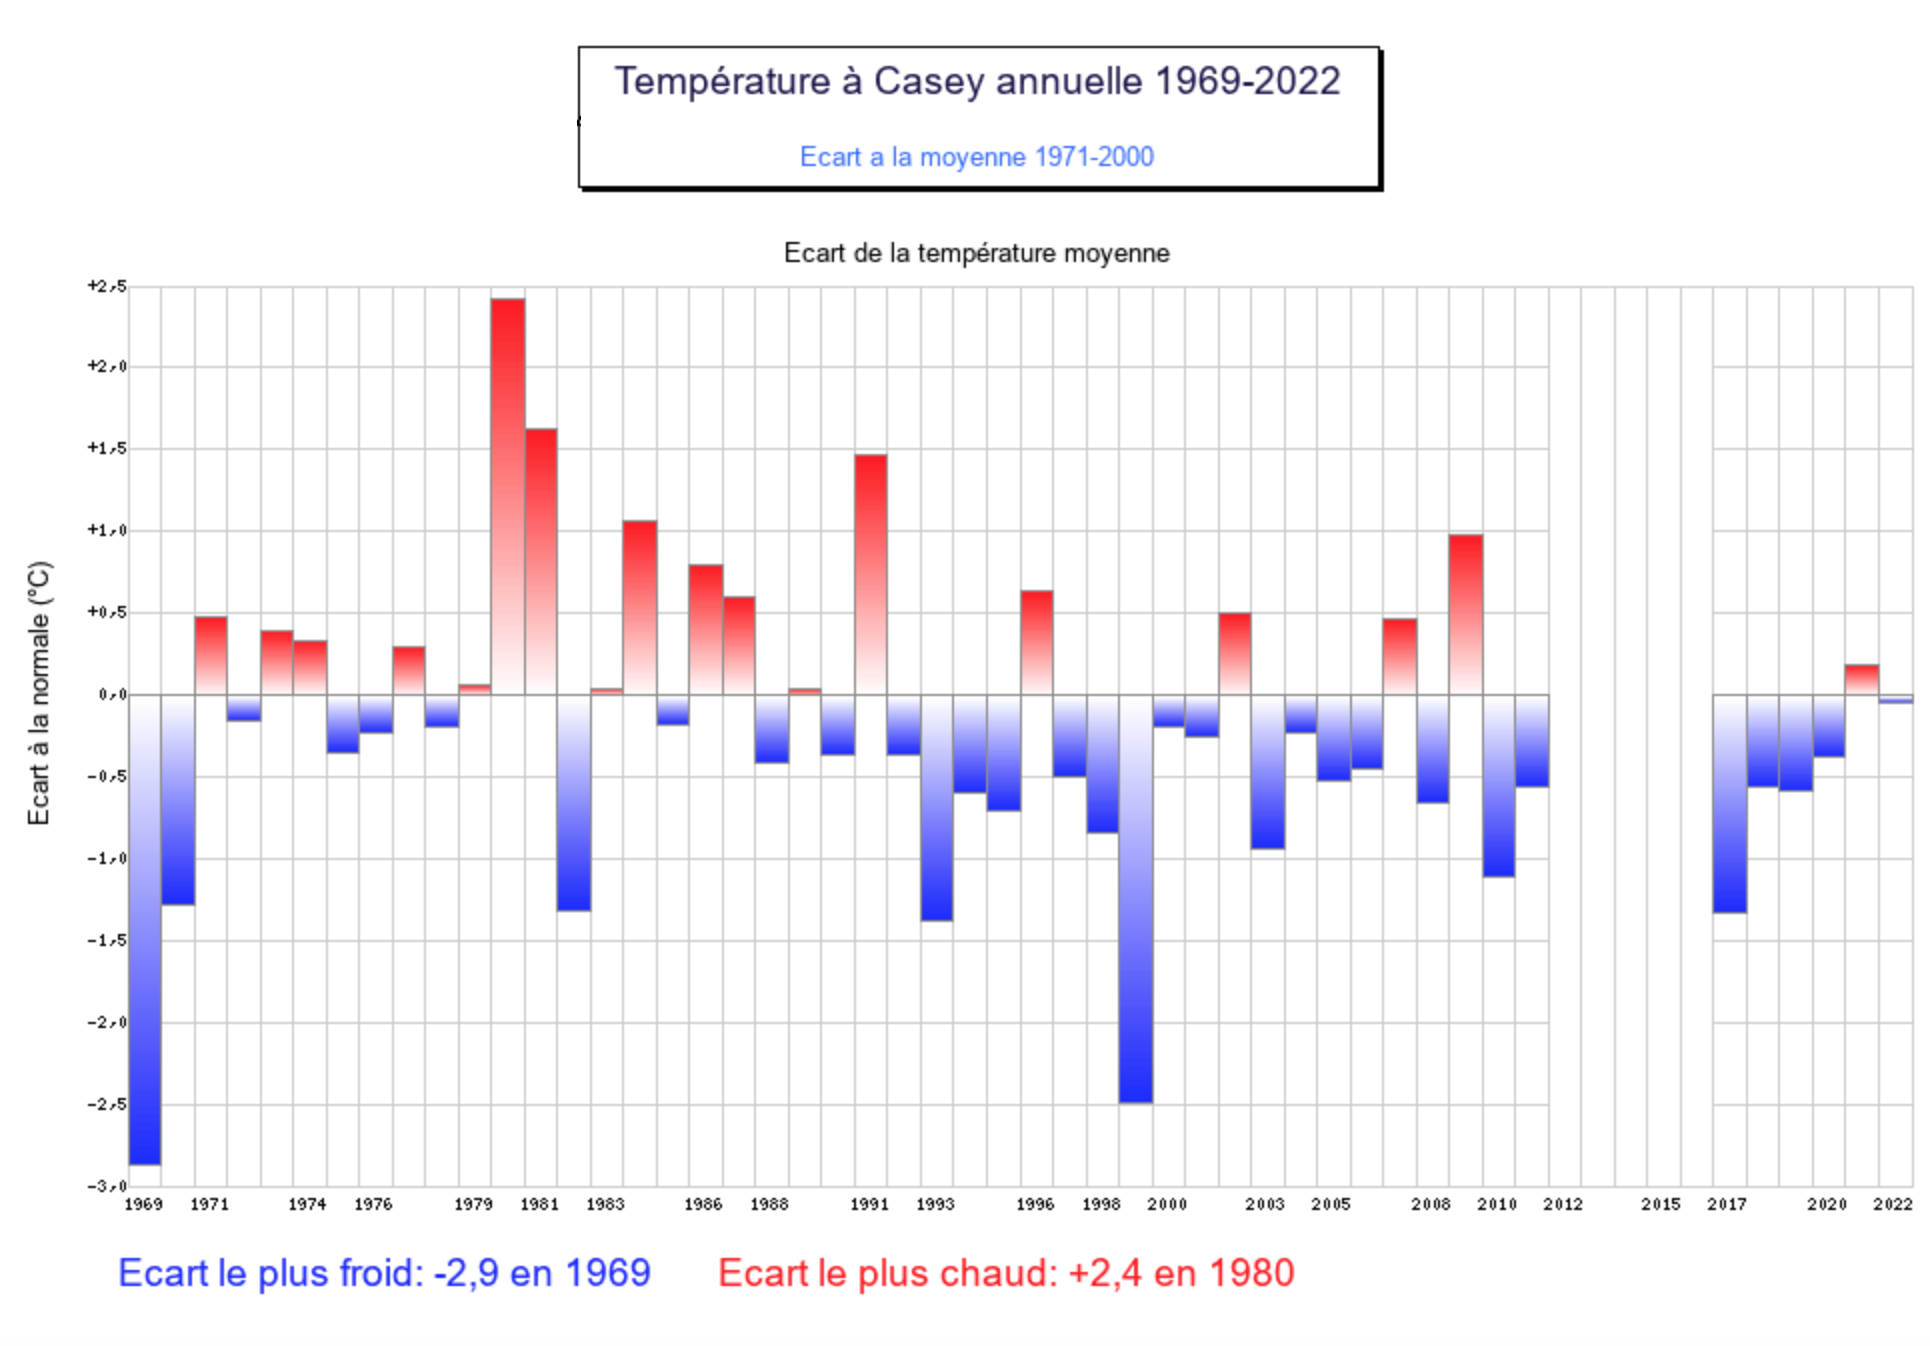 Ecart de la température moyenne annuelle à Casey; Source: Météo Climat